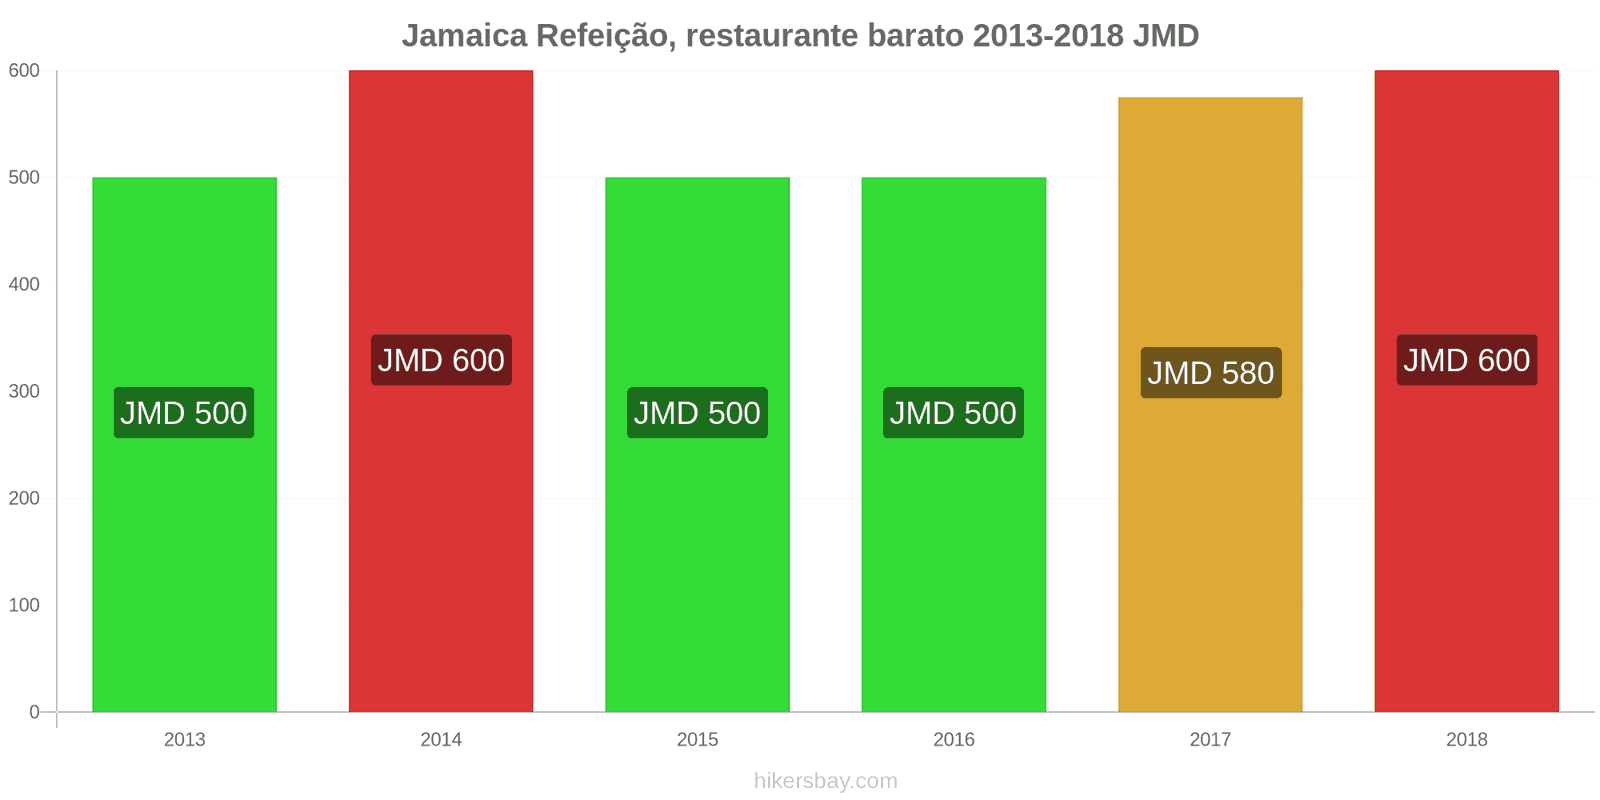 Jamaica mudanças de preços Refeição em um restaurante econômico hikersbay.com